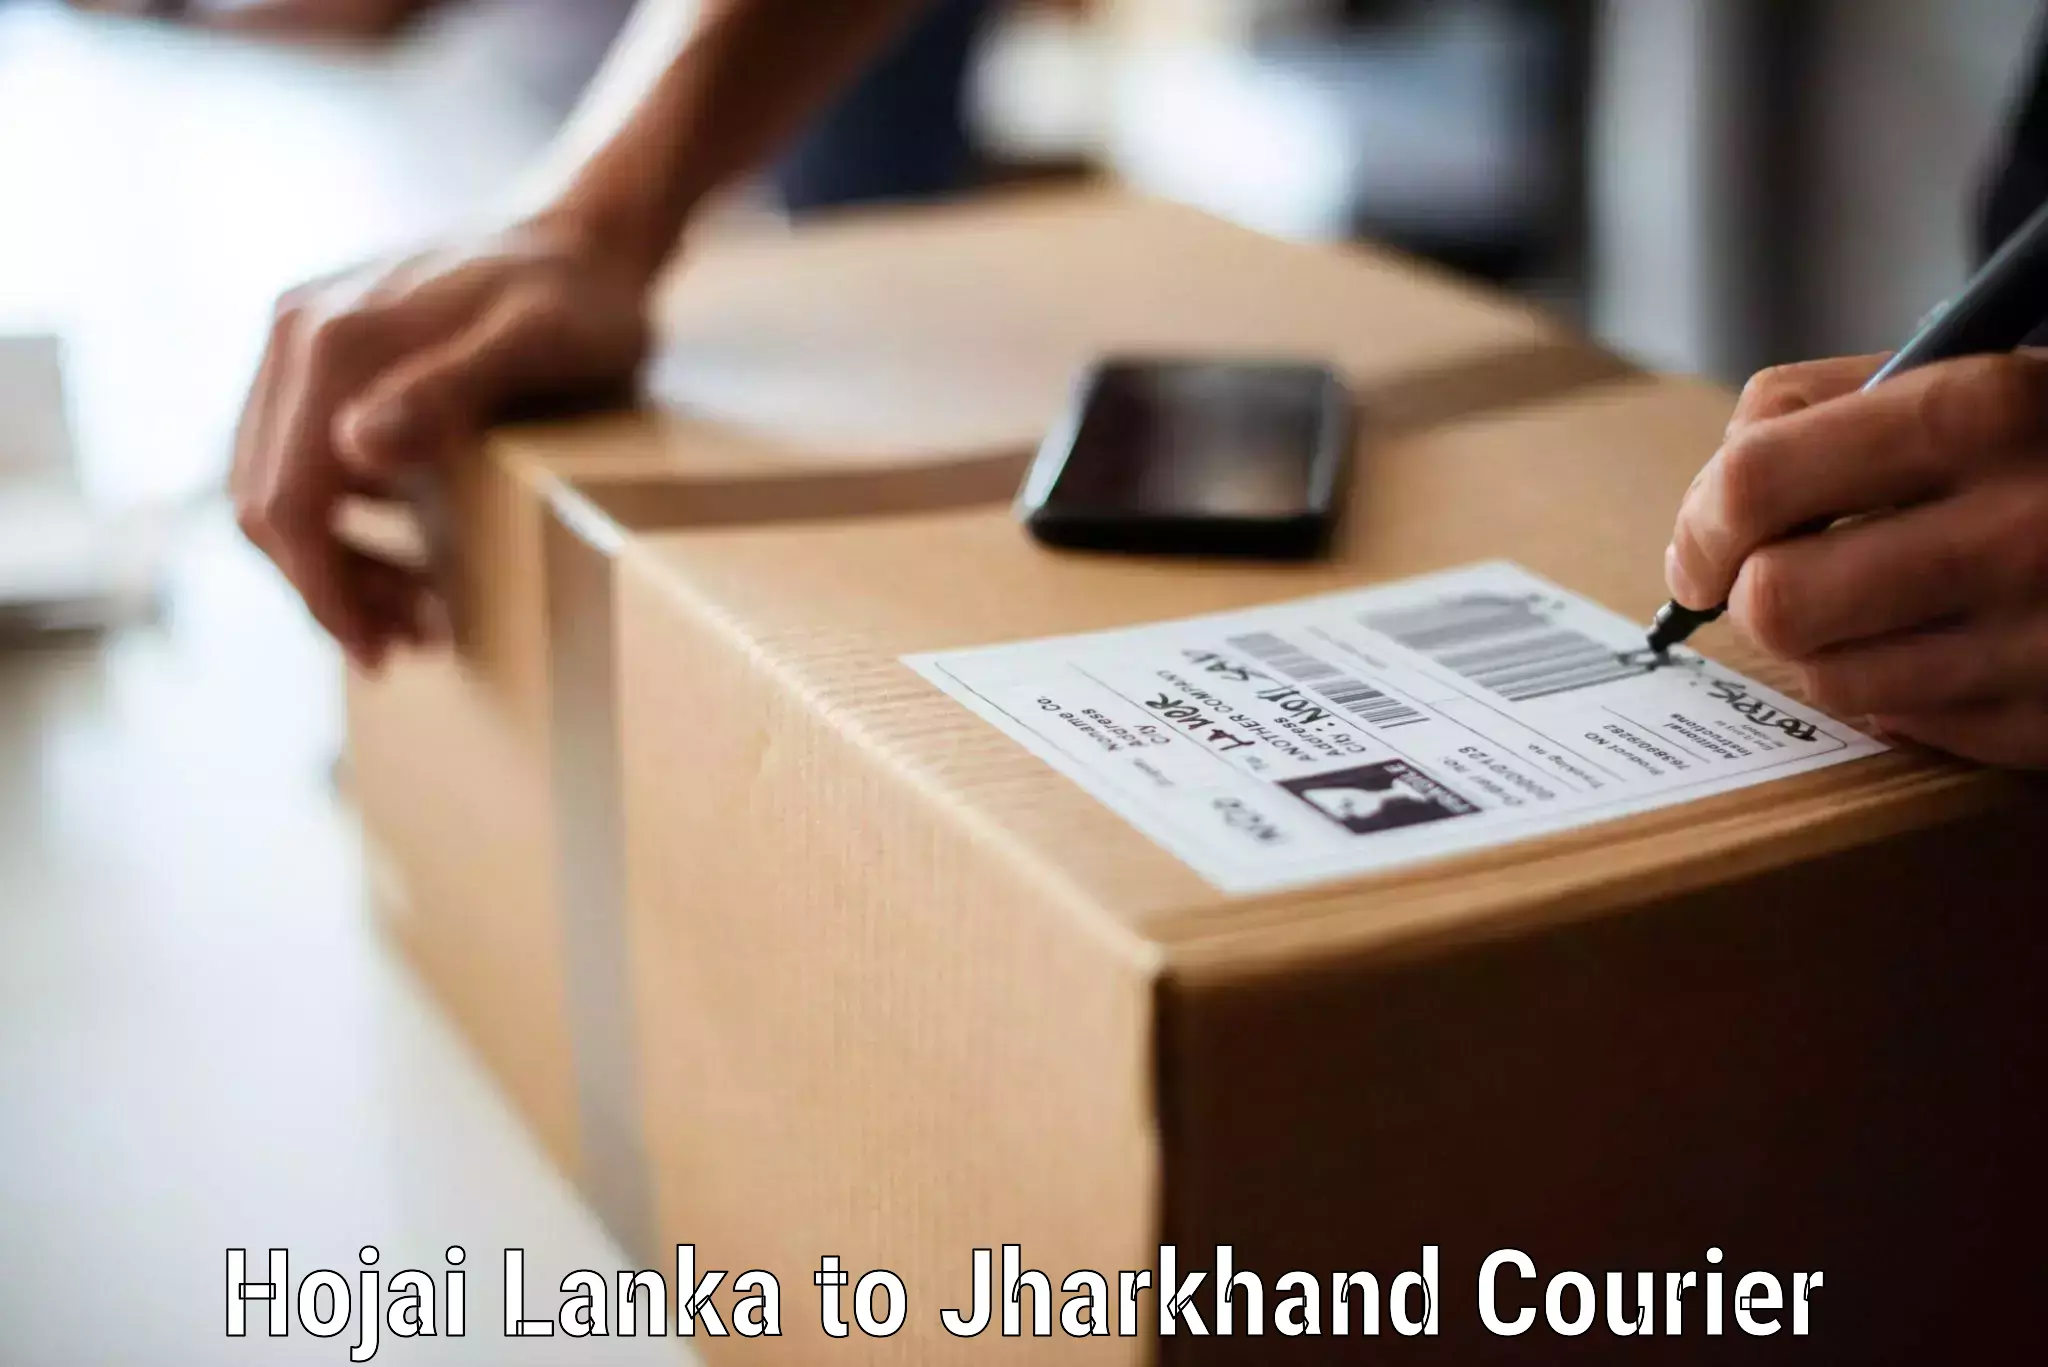 Furniture transport experts Hojai Lanka to Rajdhanwar